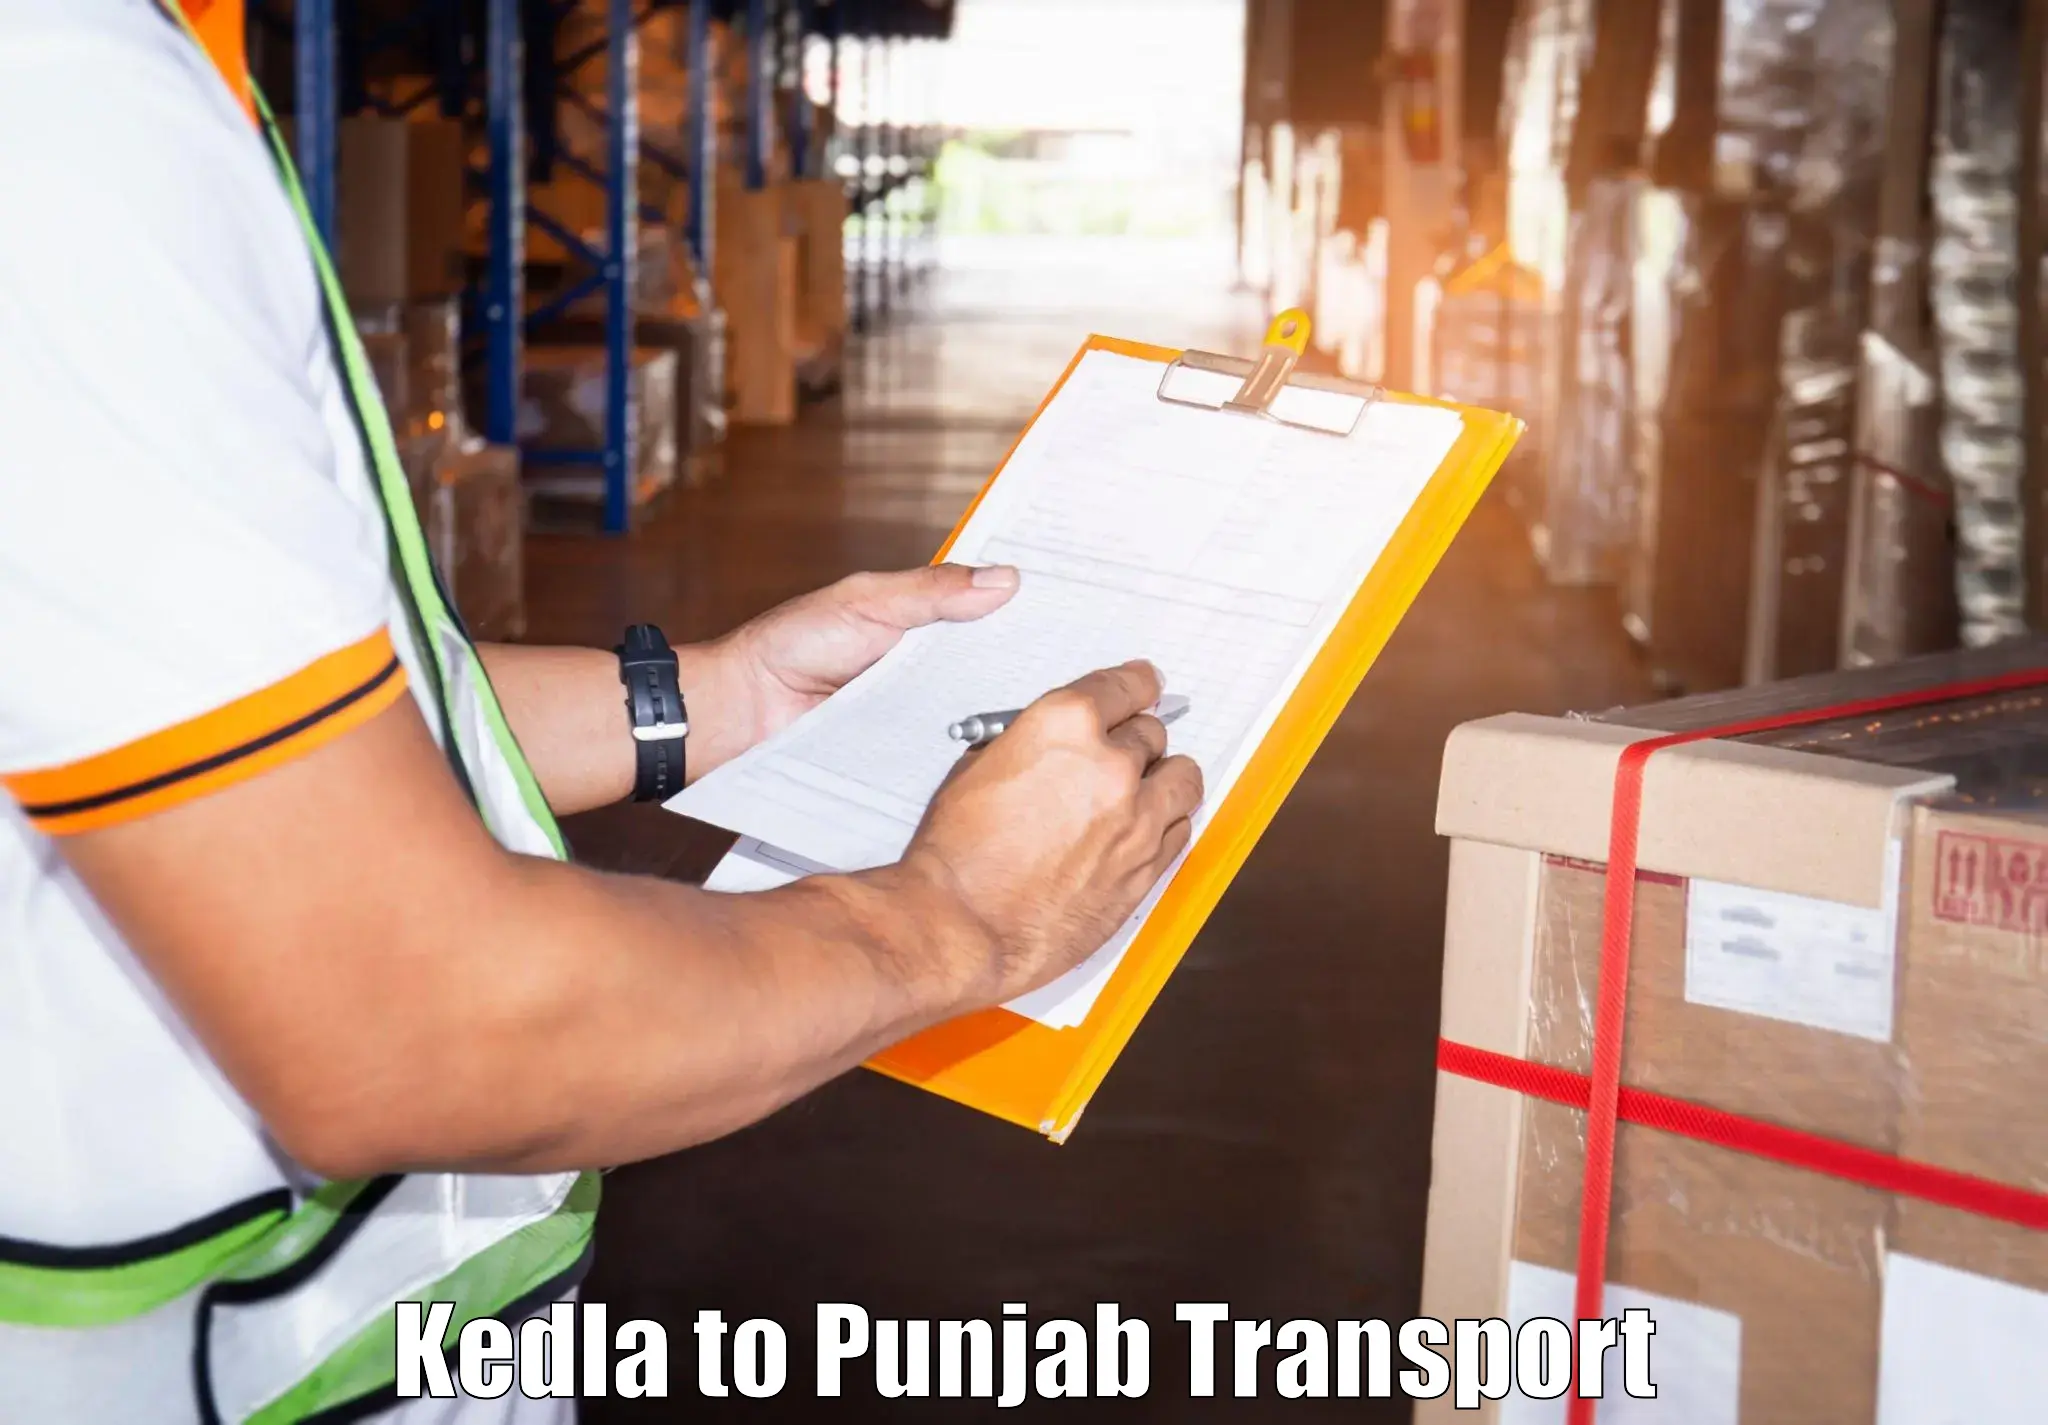 Delivery service Kedla to Samana